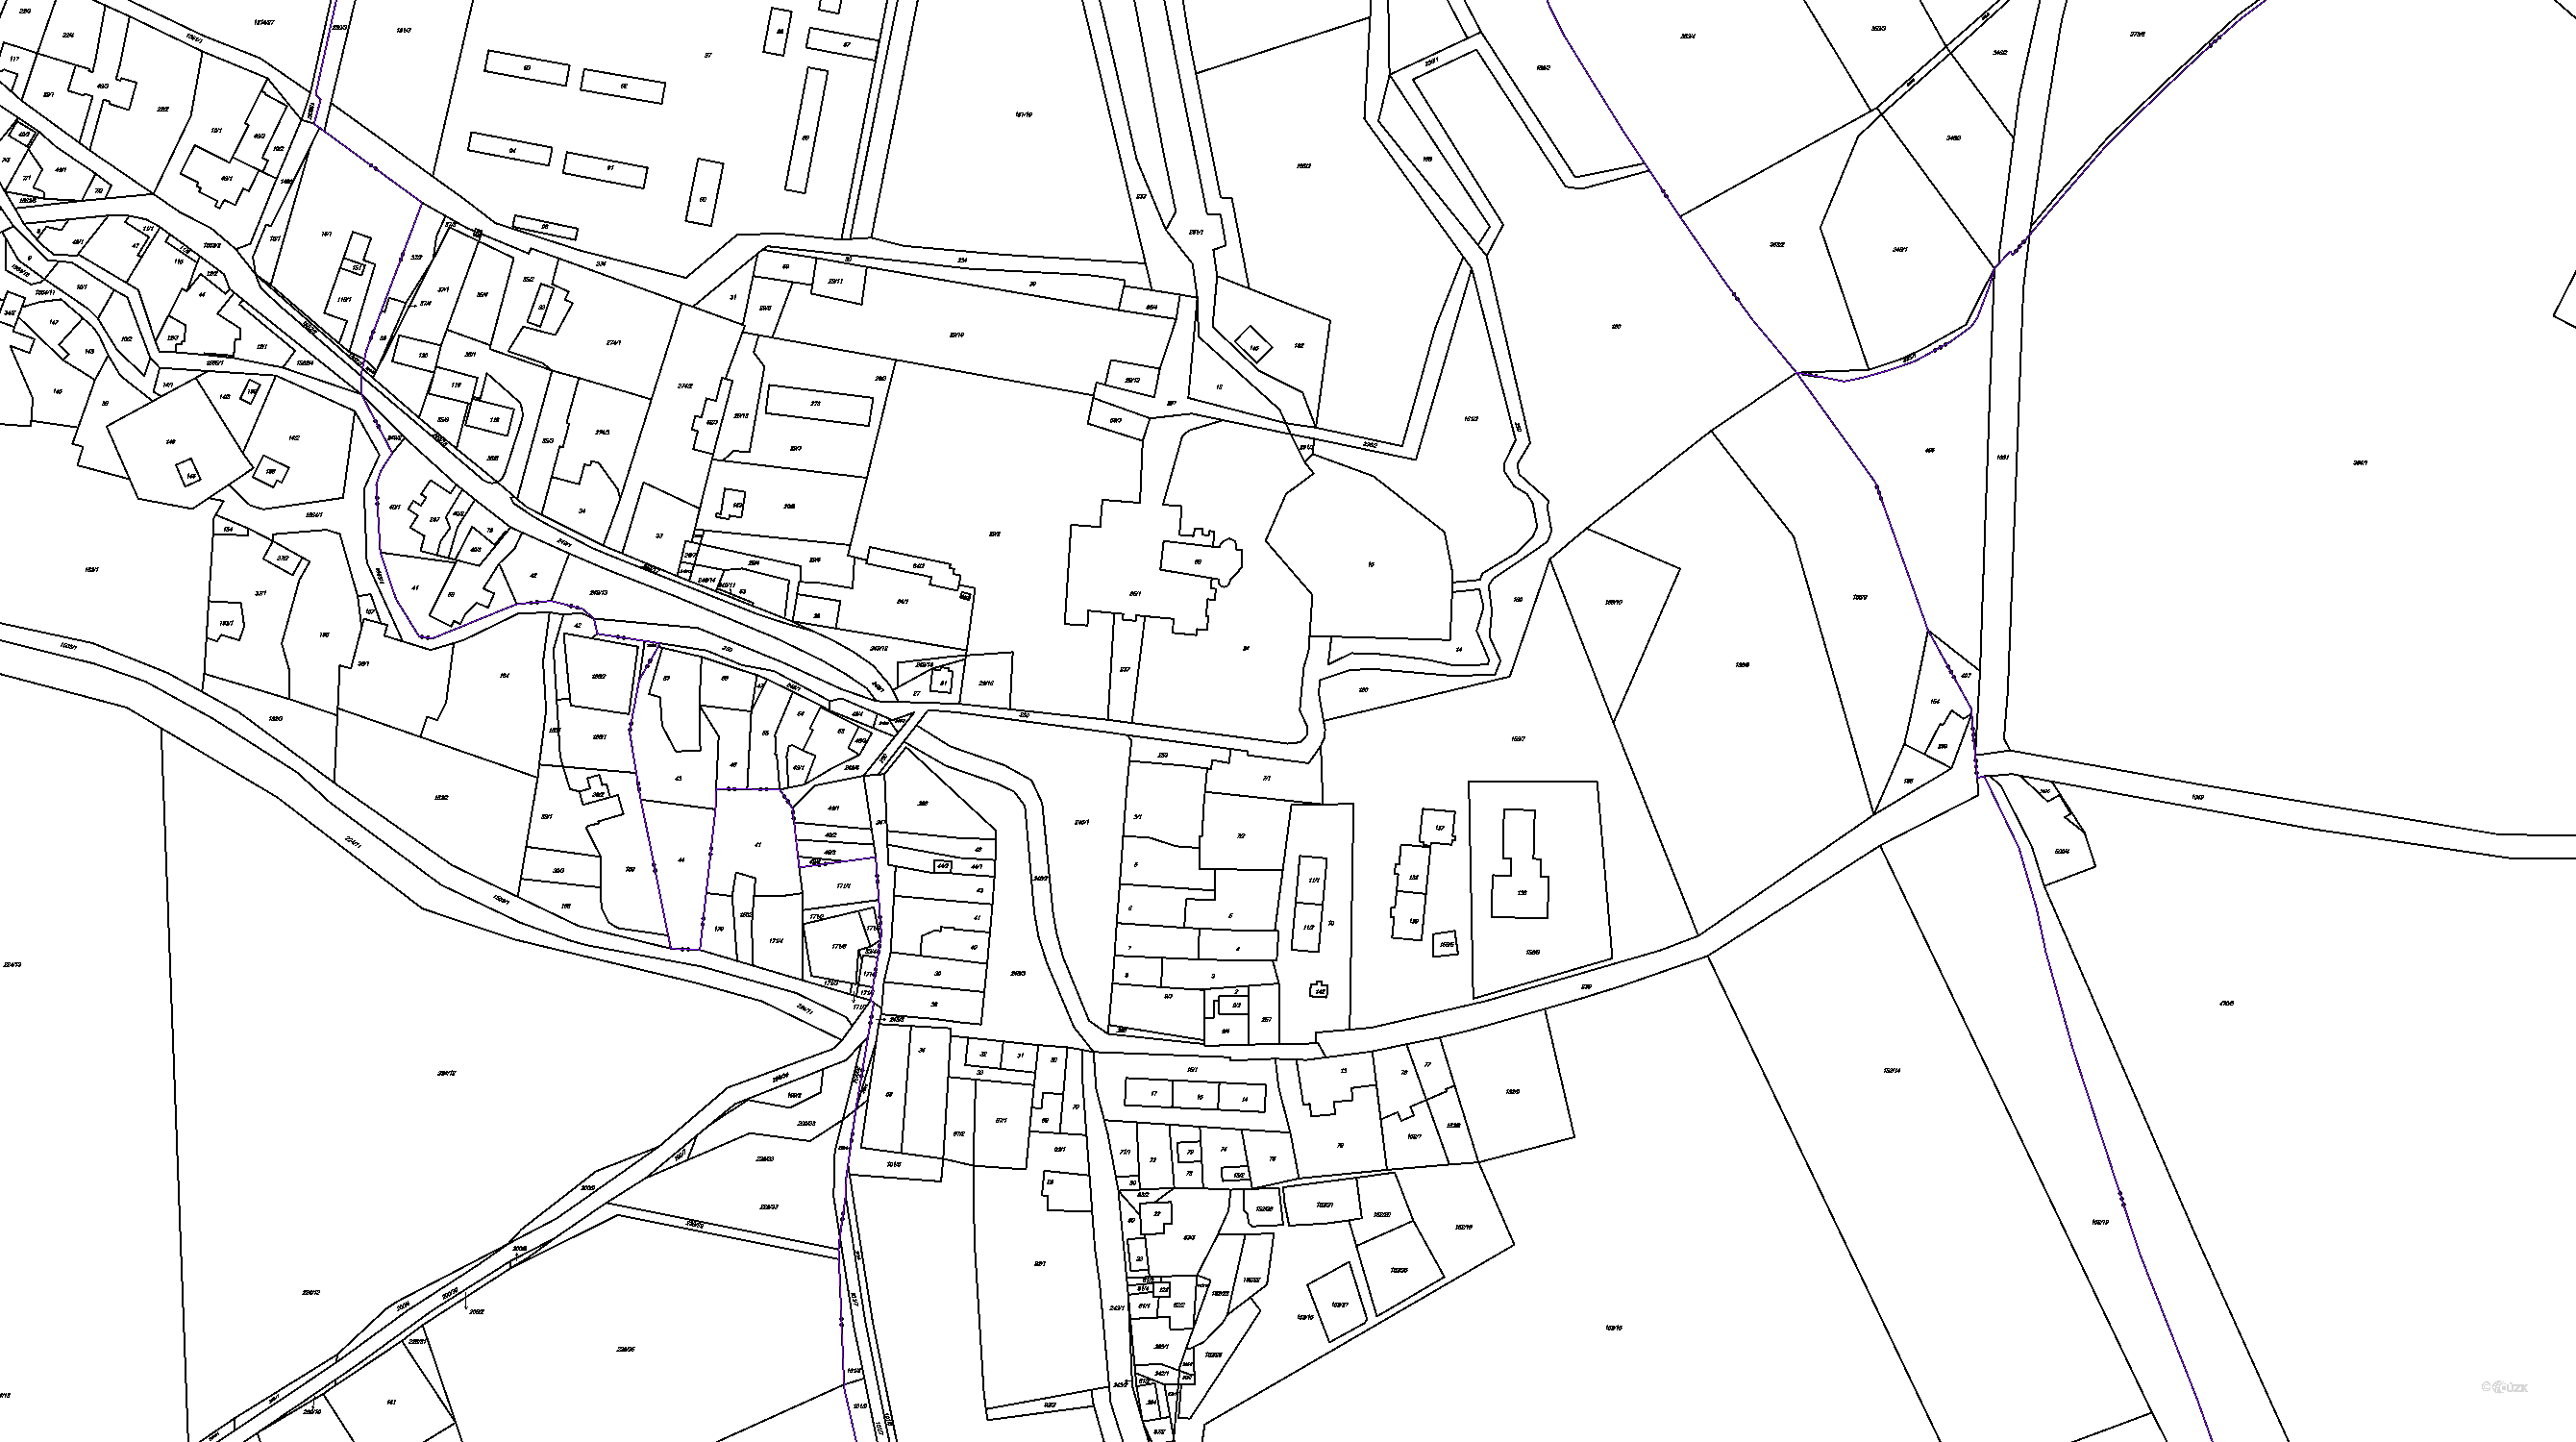 Katastrální mapa pozemků a čísla parcel Městys Rudoltice